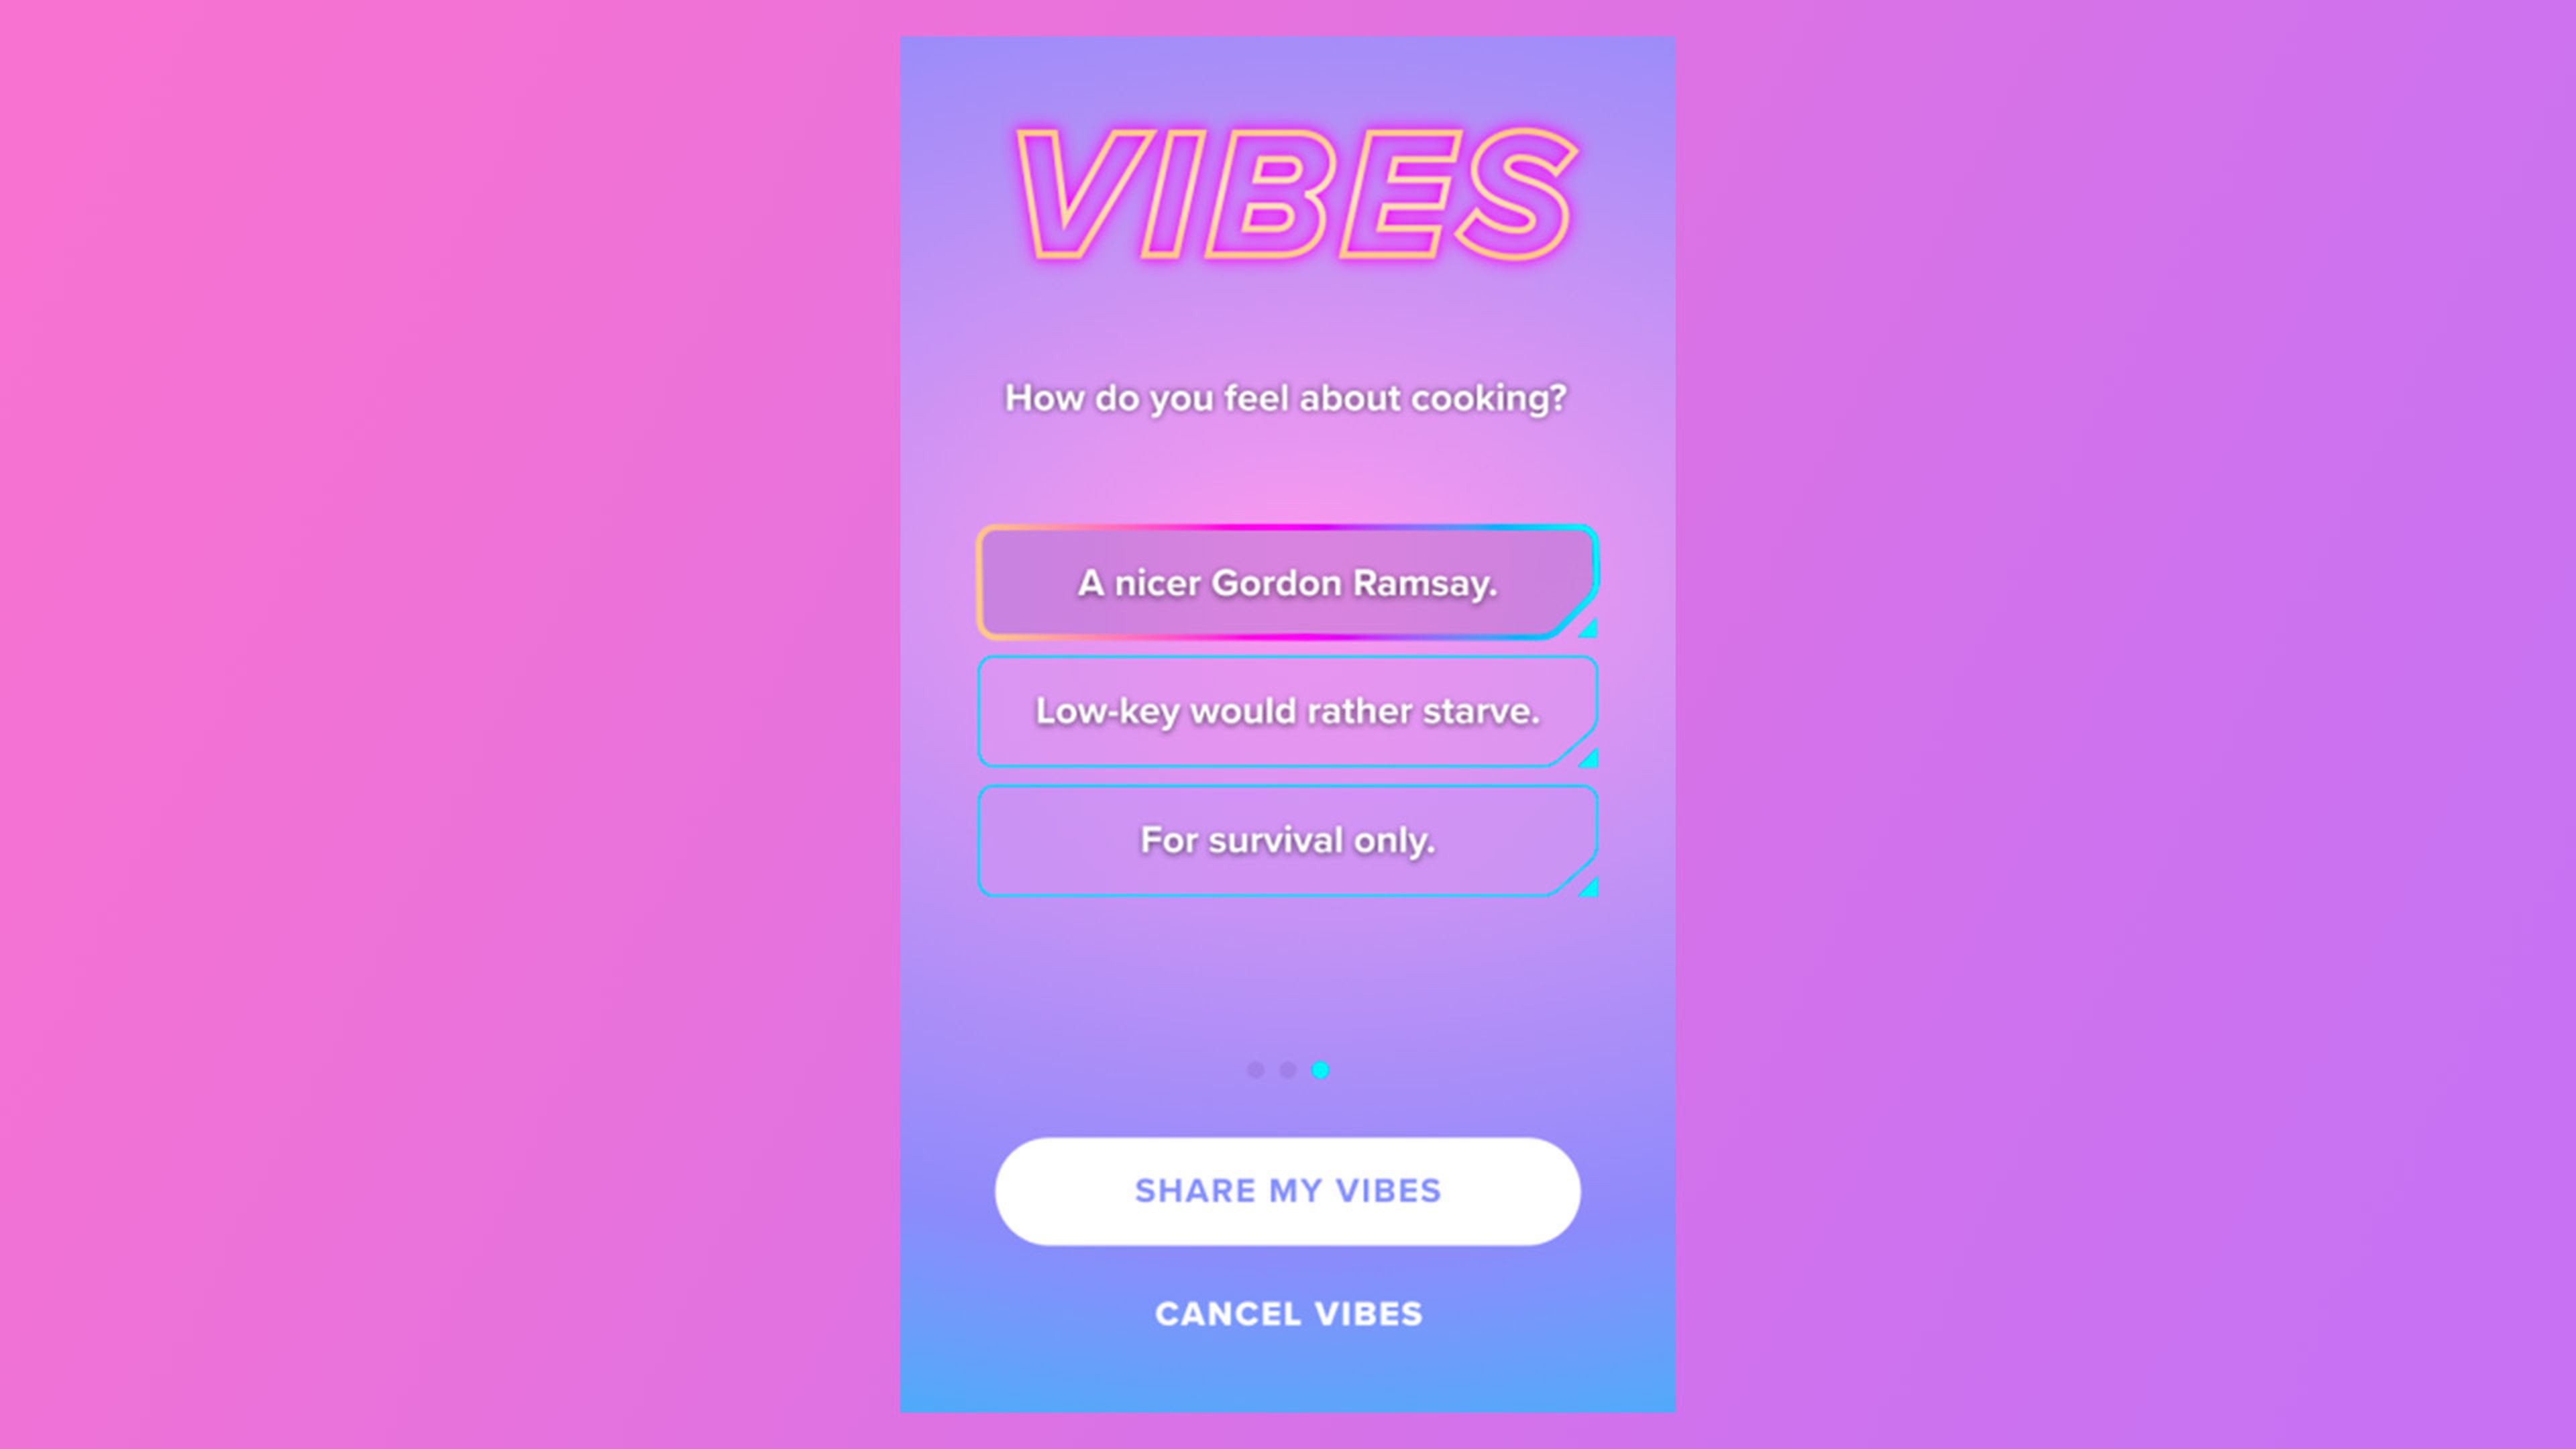 La nueva característica de Tinder se llama Vibes y está hecha para conectar a los usuarios que compartan gustos